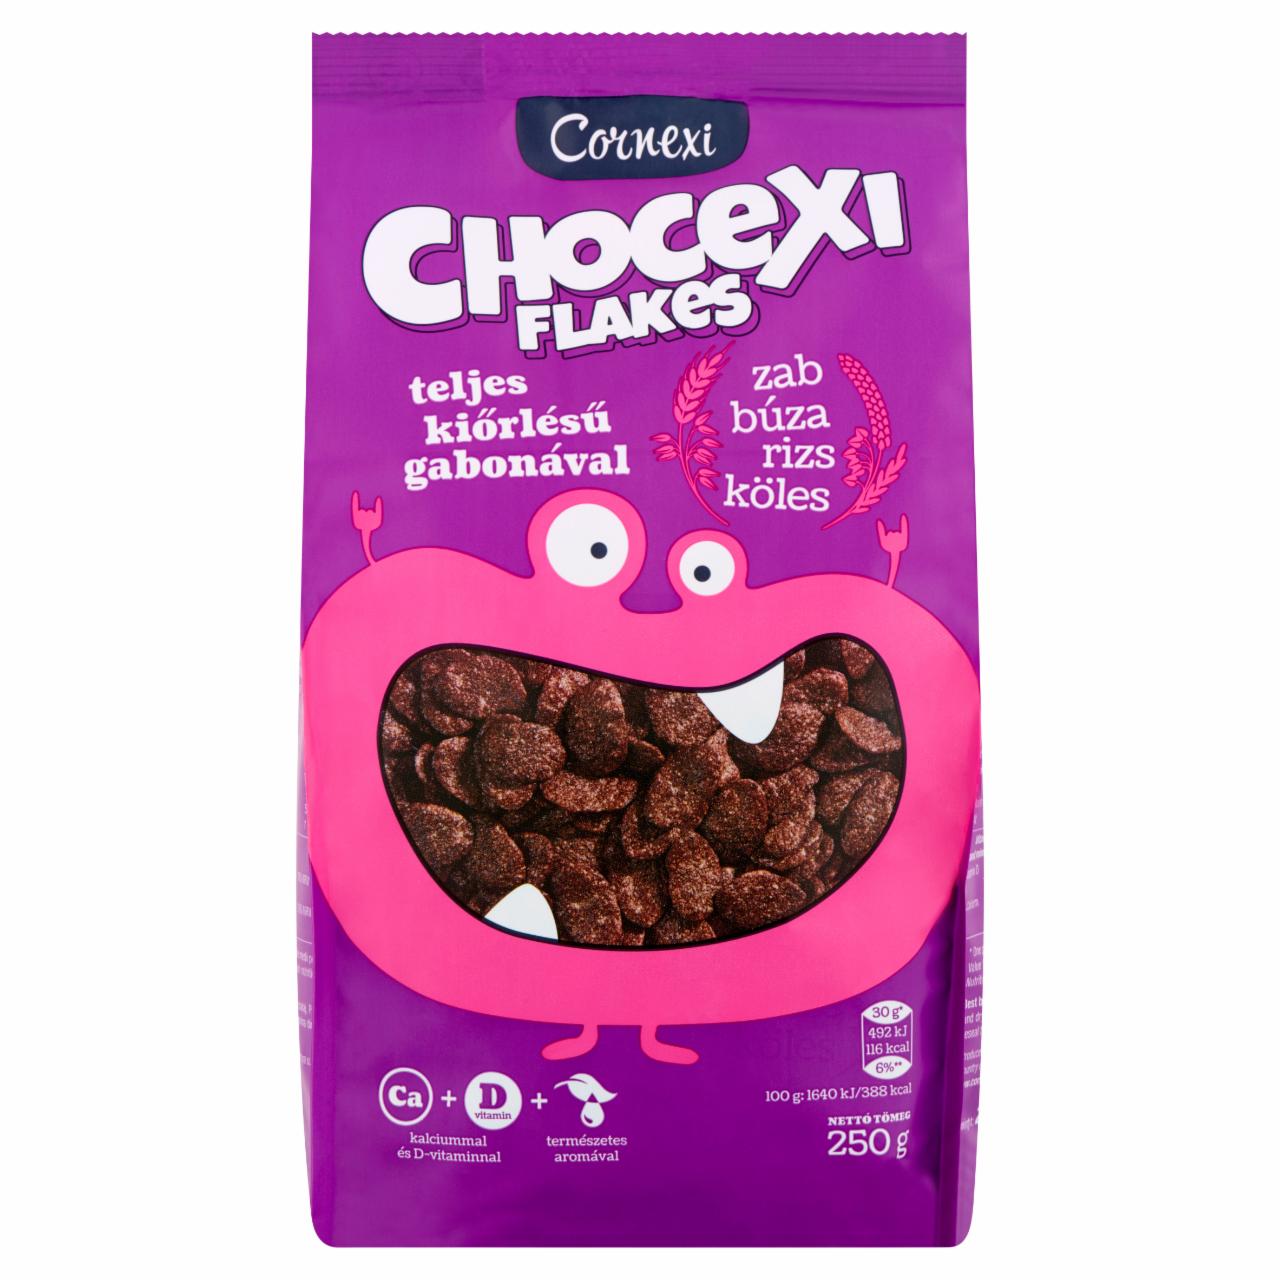 Képek - Cornexi Chocexi Flakes csokoládés gabonapehely teljes kiőrlésű gabonával, Ca+D-vitaminnal 250 g